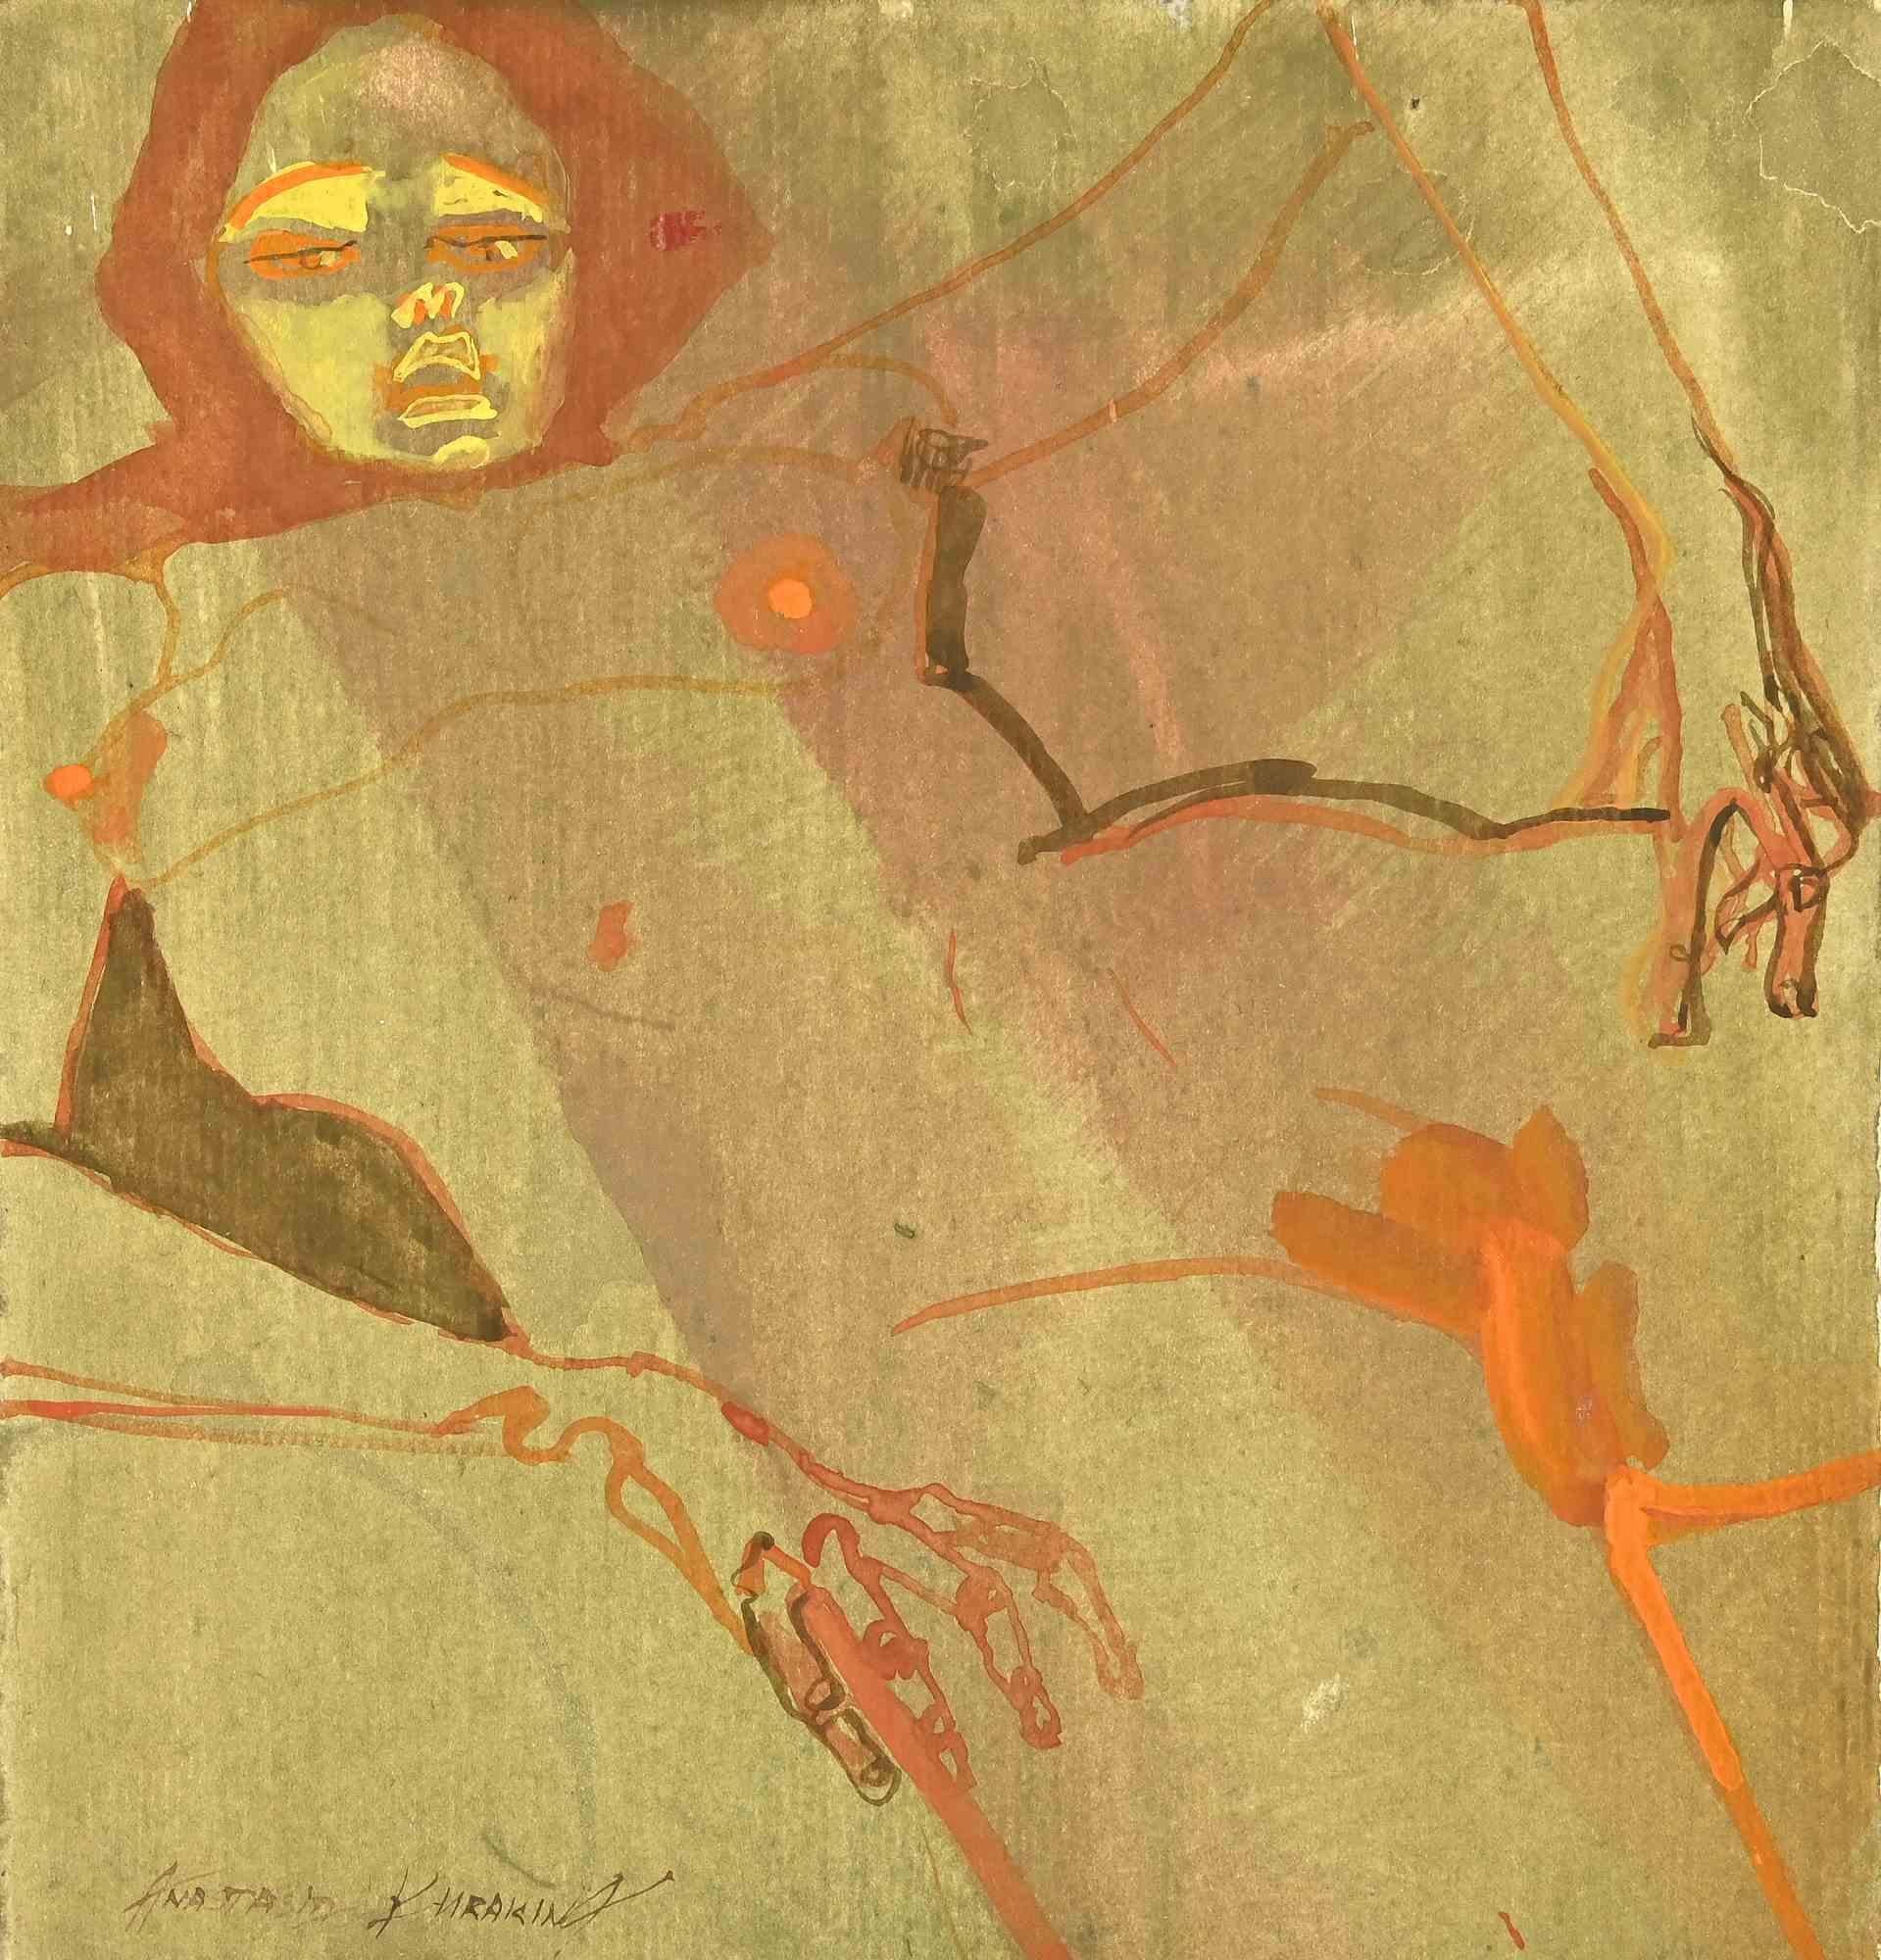 Der Krieg ist ein Aquarell von Anastasia Kurakina aus dem Jahr 2016.

Das kleine Kunstwerk ist in gutem Zustand und mit leuchtenden Farben.

Vom Künstler am unteren Rand handsigniert.

Anastasia Kurakina wurde 1987 in Moskau geboren. Sie lebt und